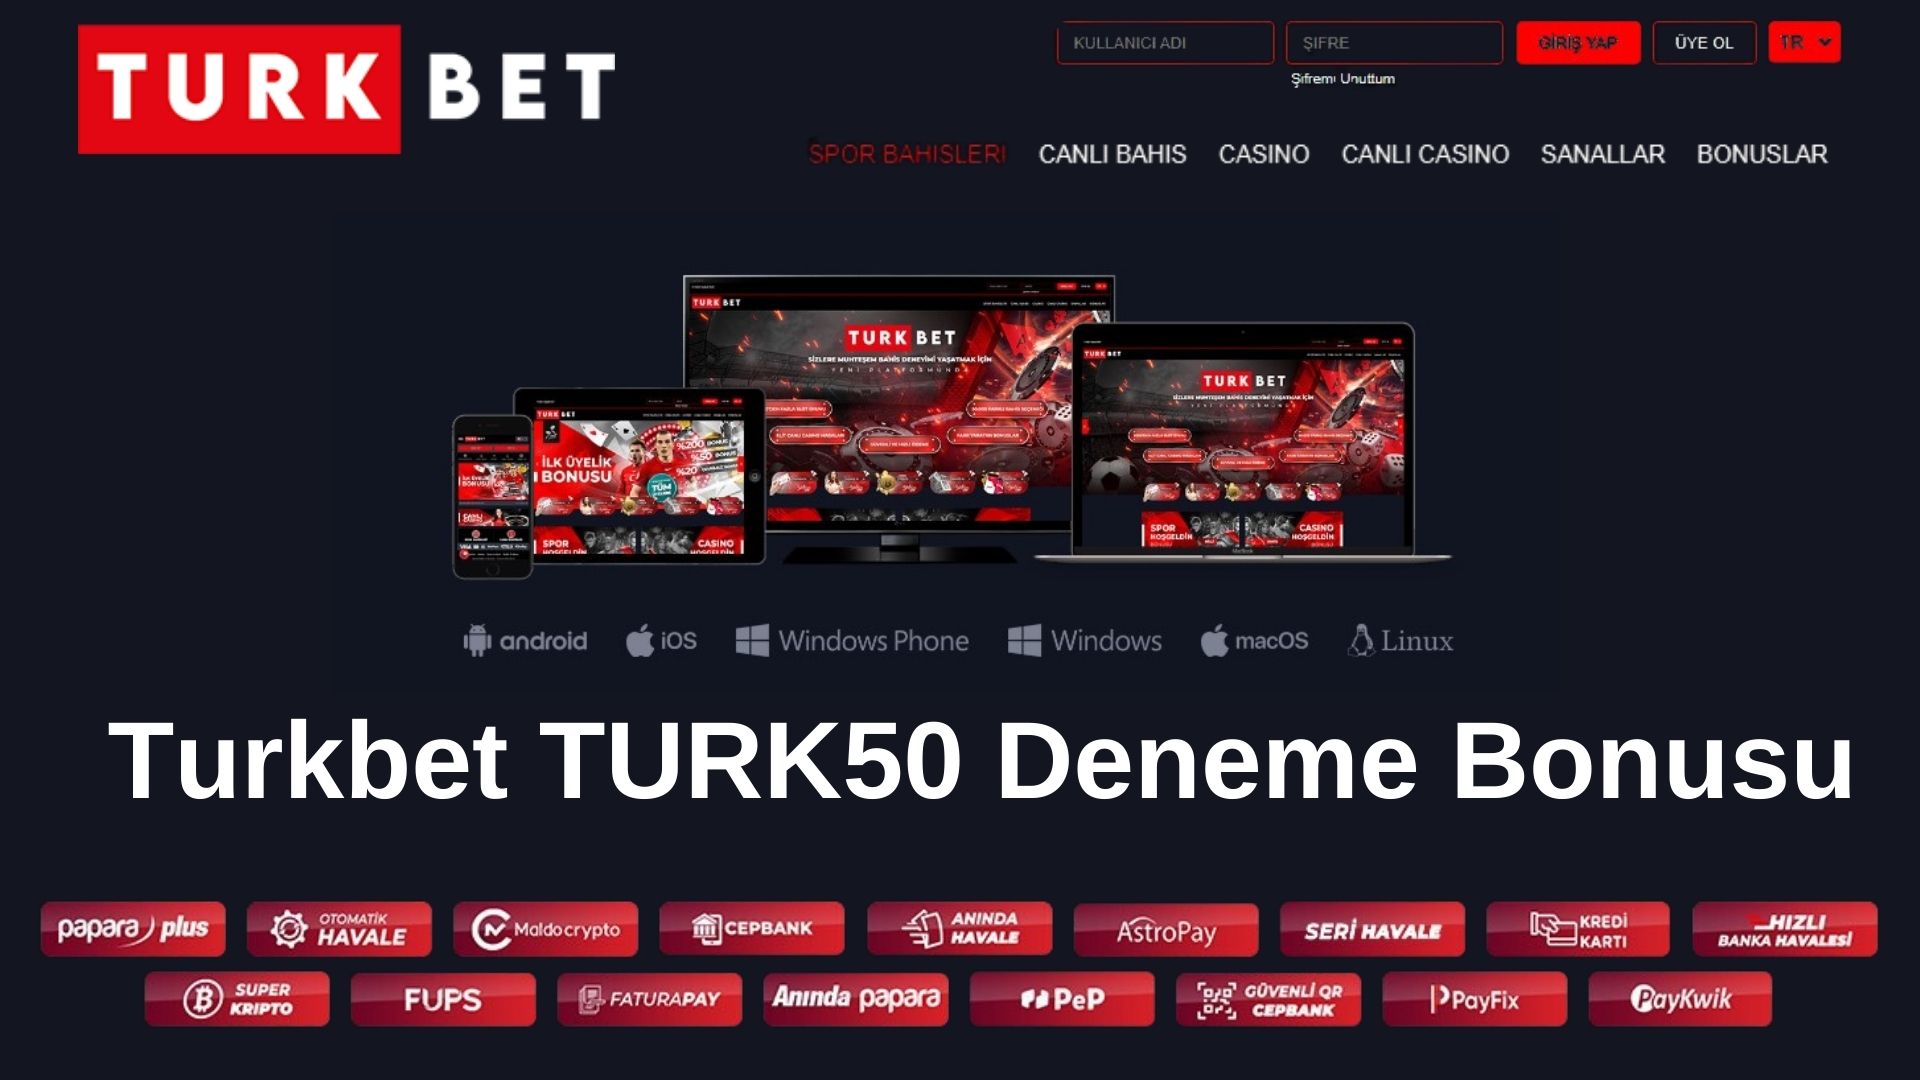 Turkbet TURK50 Deneme Bonusu